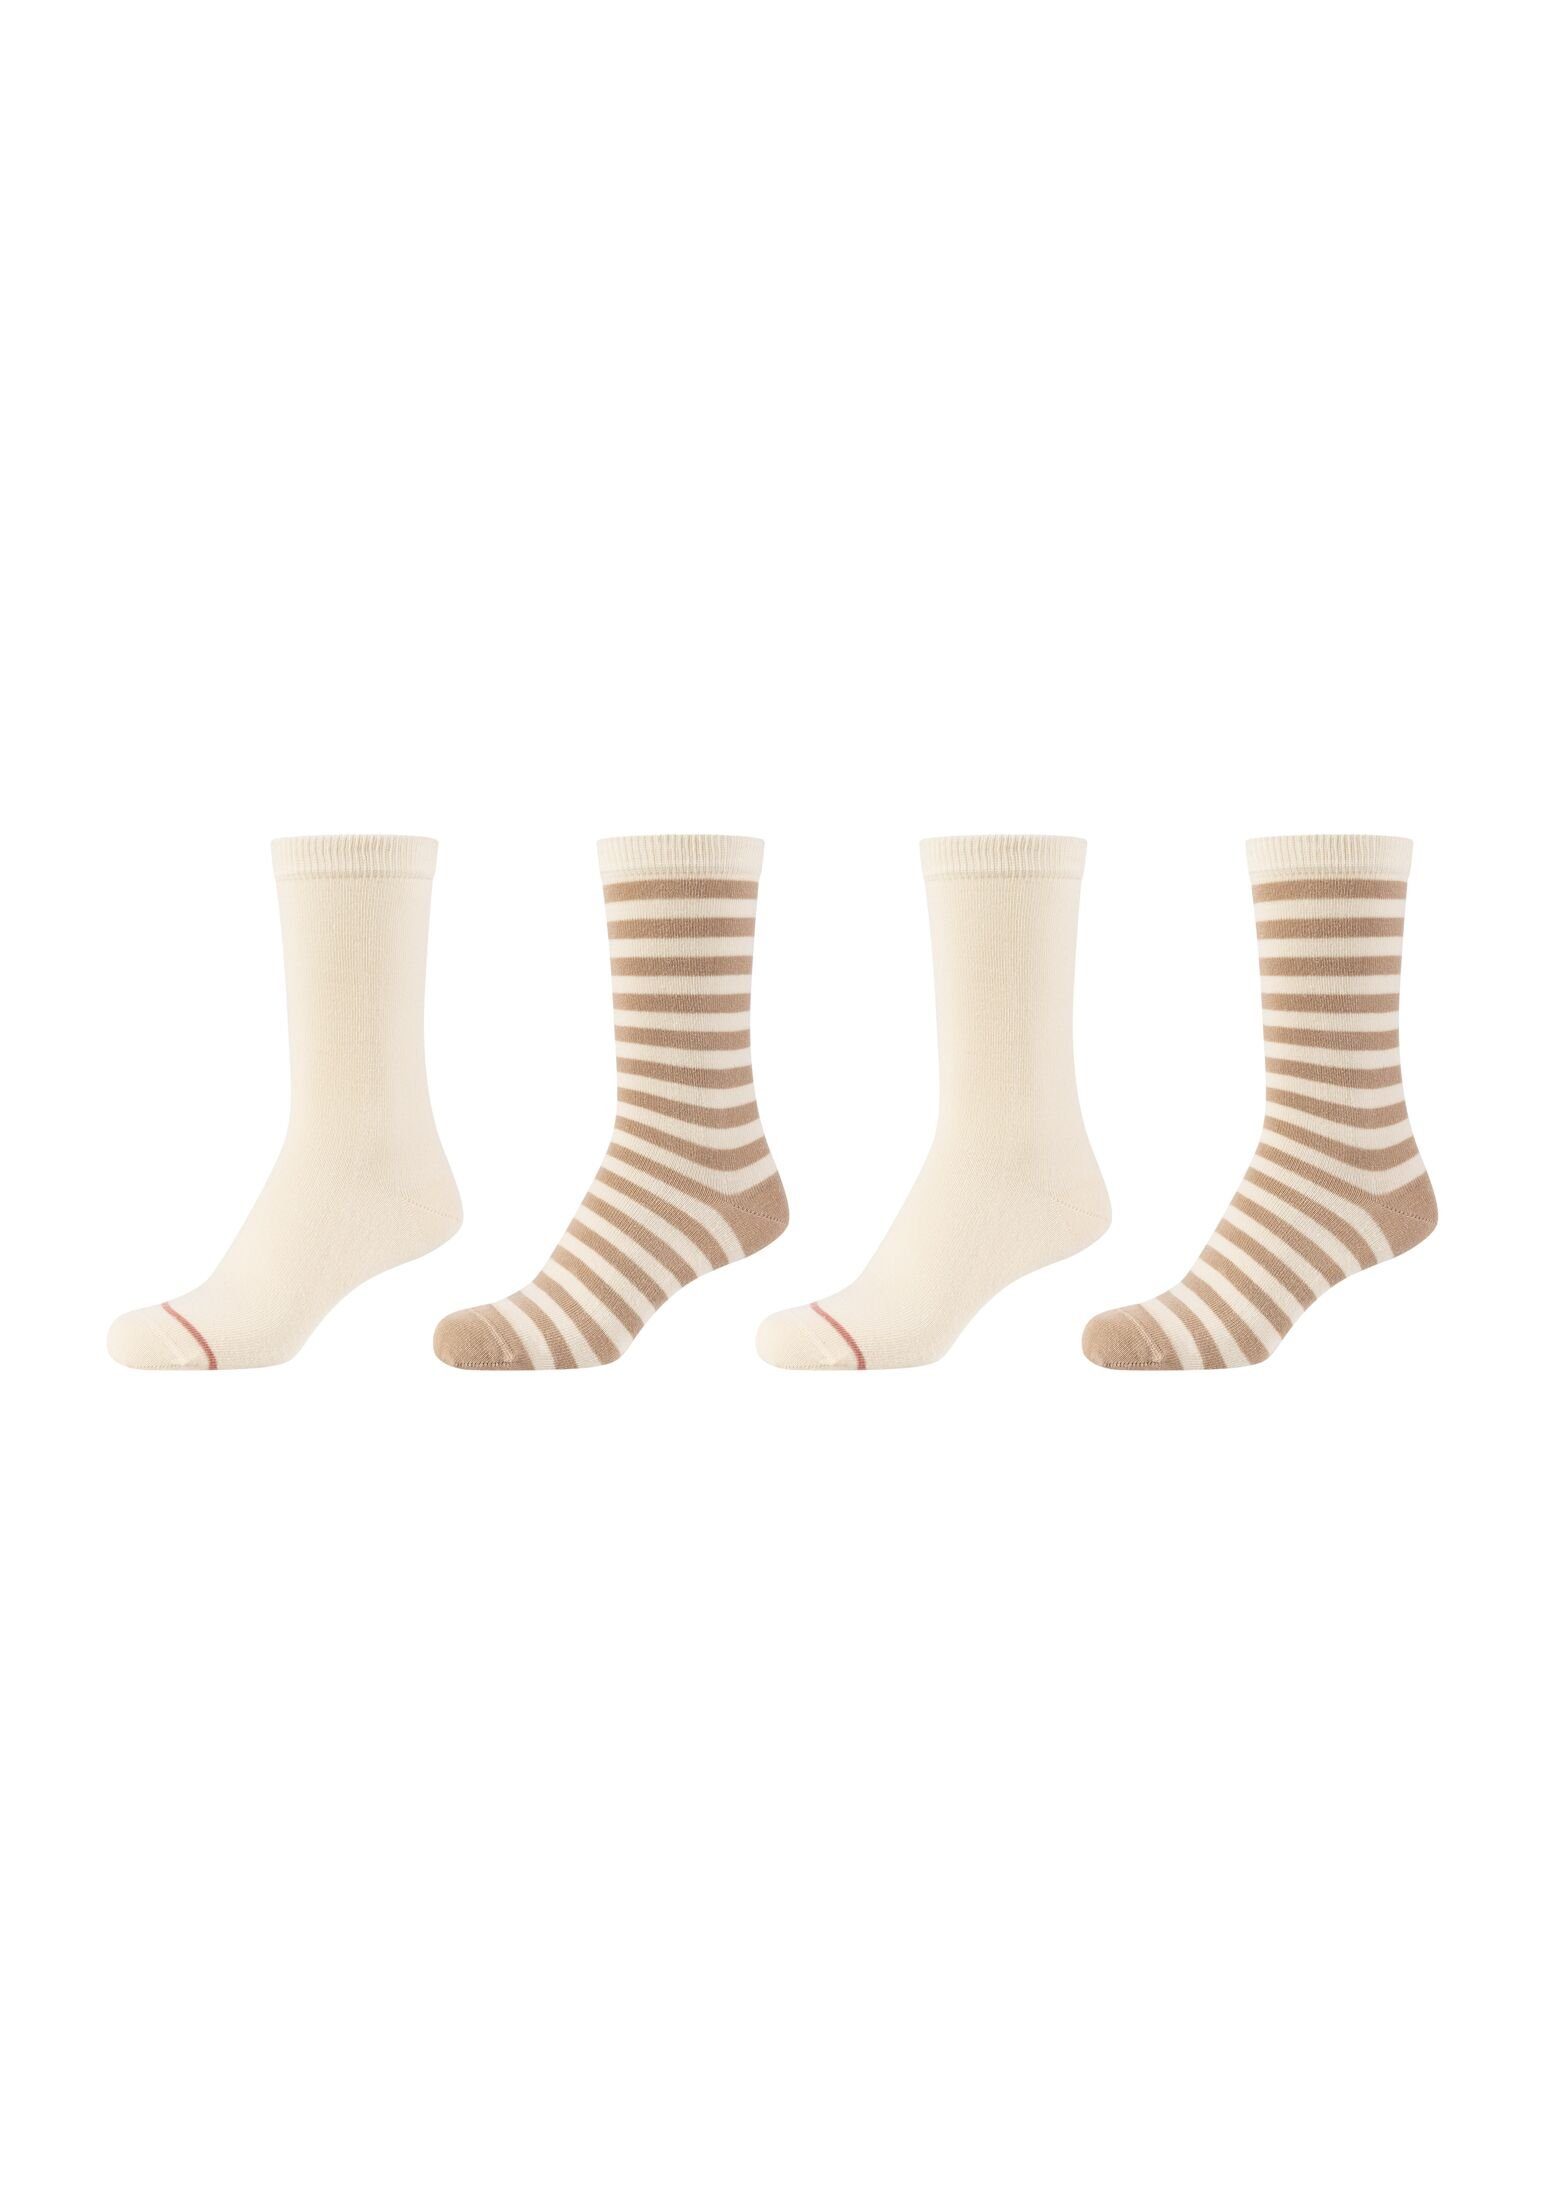 Socken 4er sand s.Oliver Socken Pack